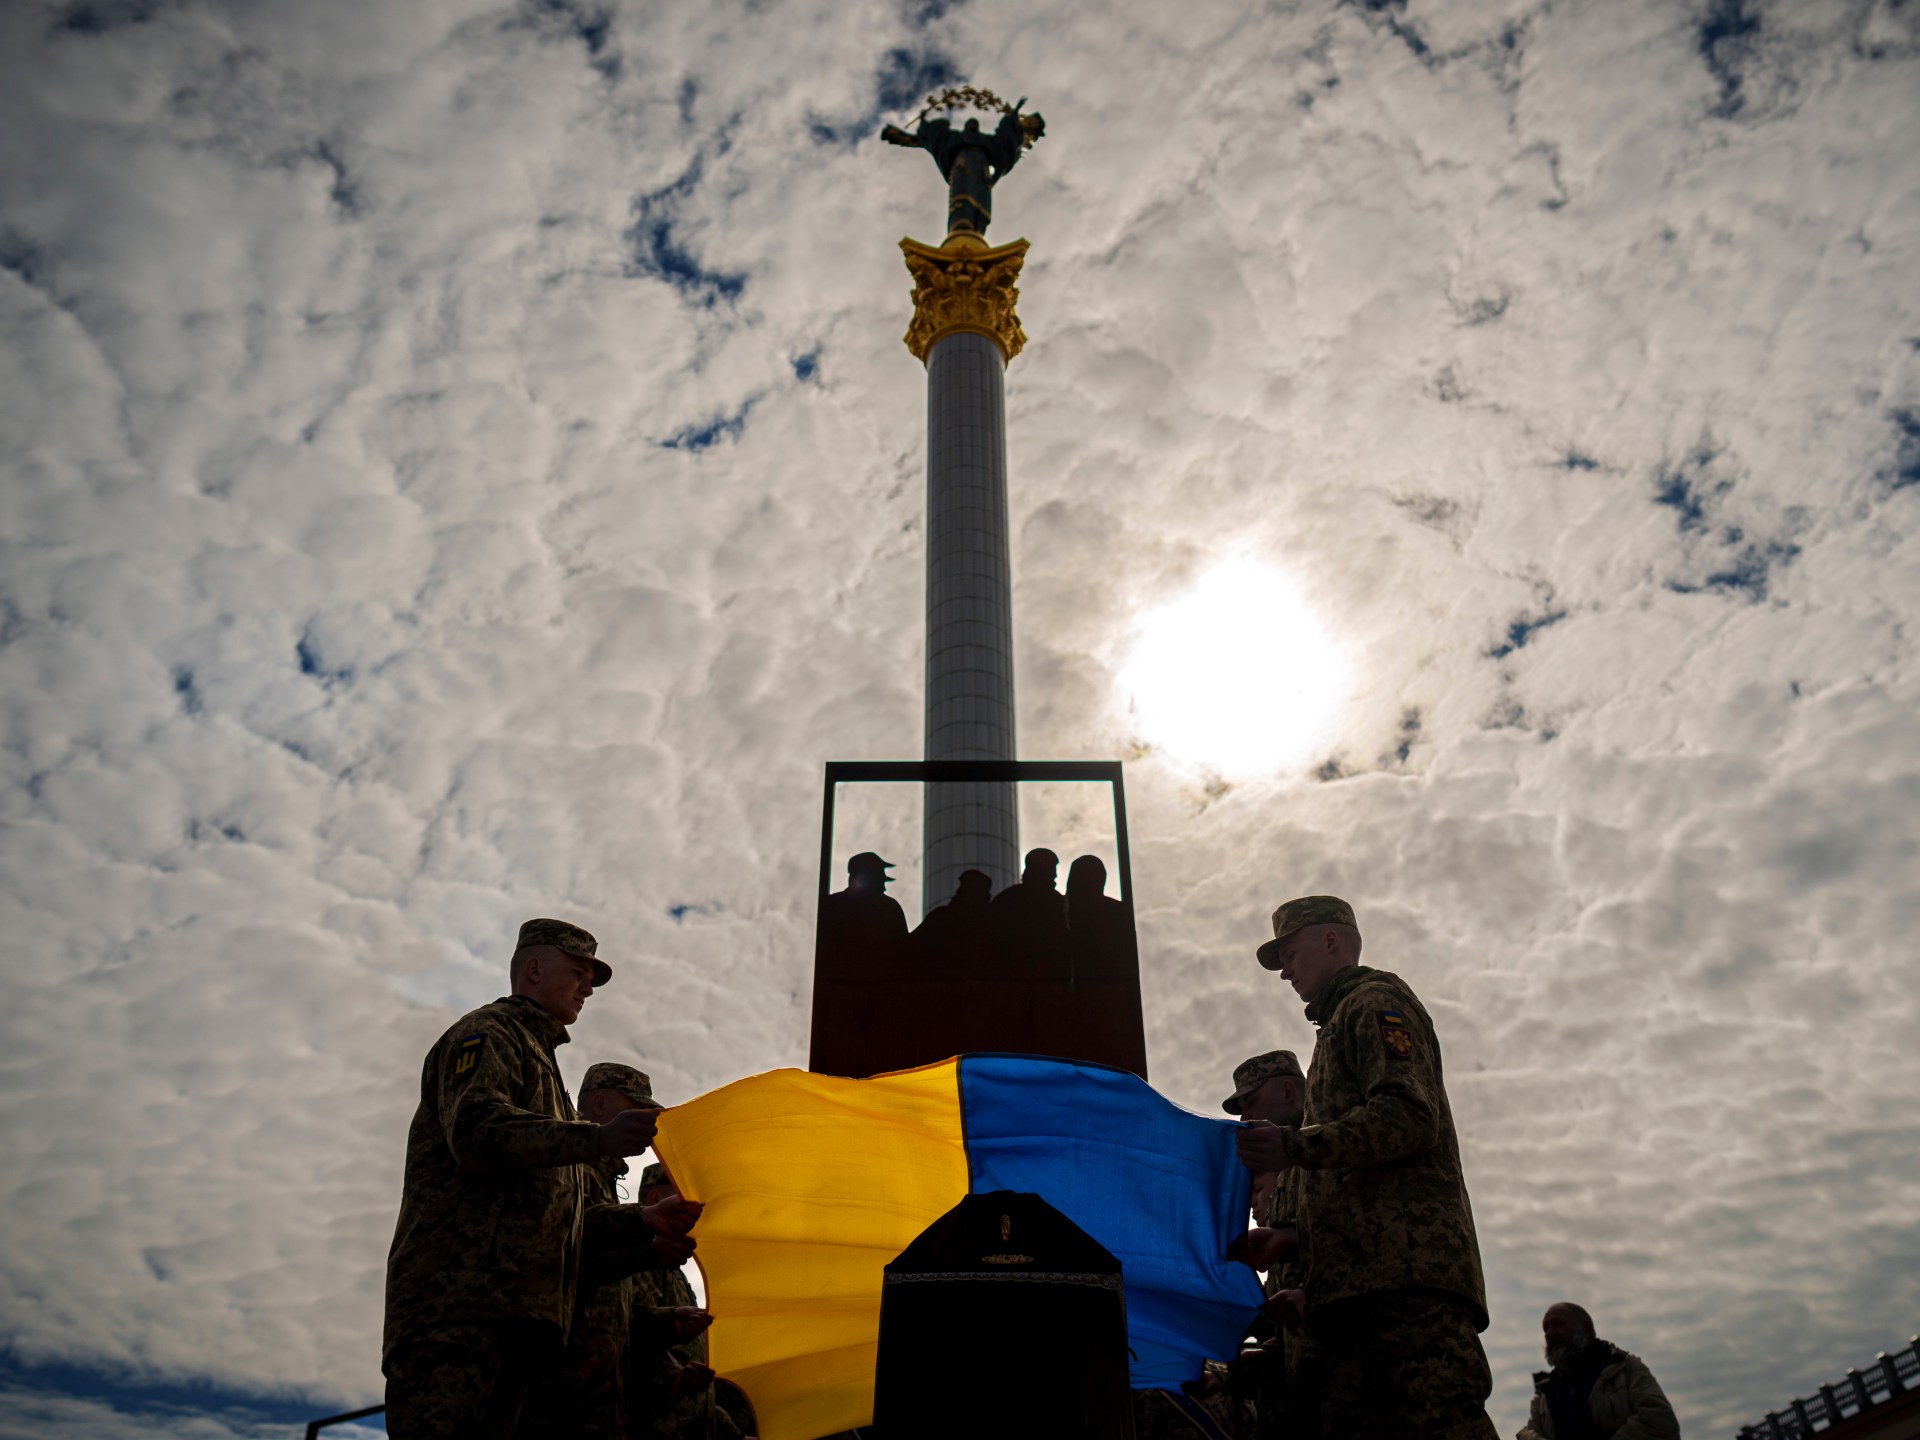 Війна Росії проти України змушує Європу використовувати свою економічну міць як зброю  Новини російсько-української війни